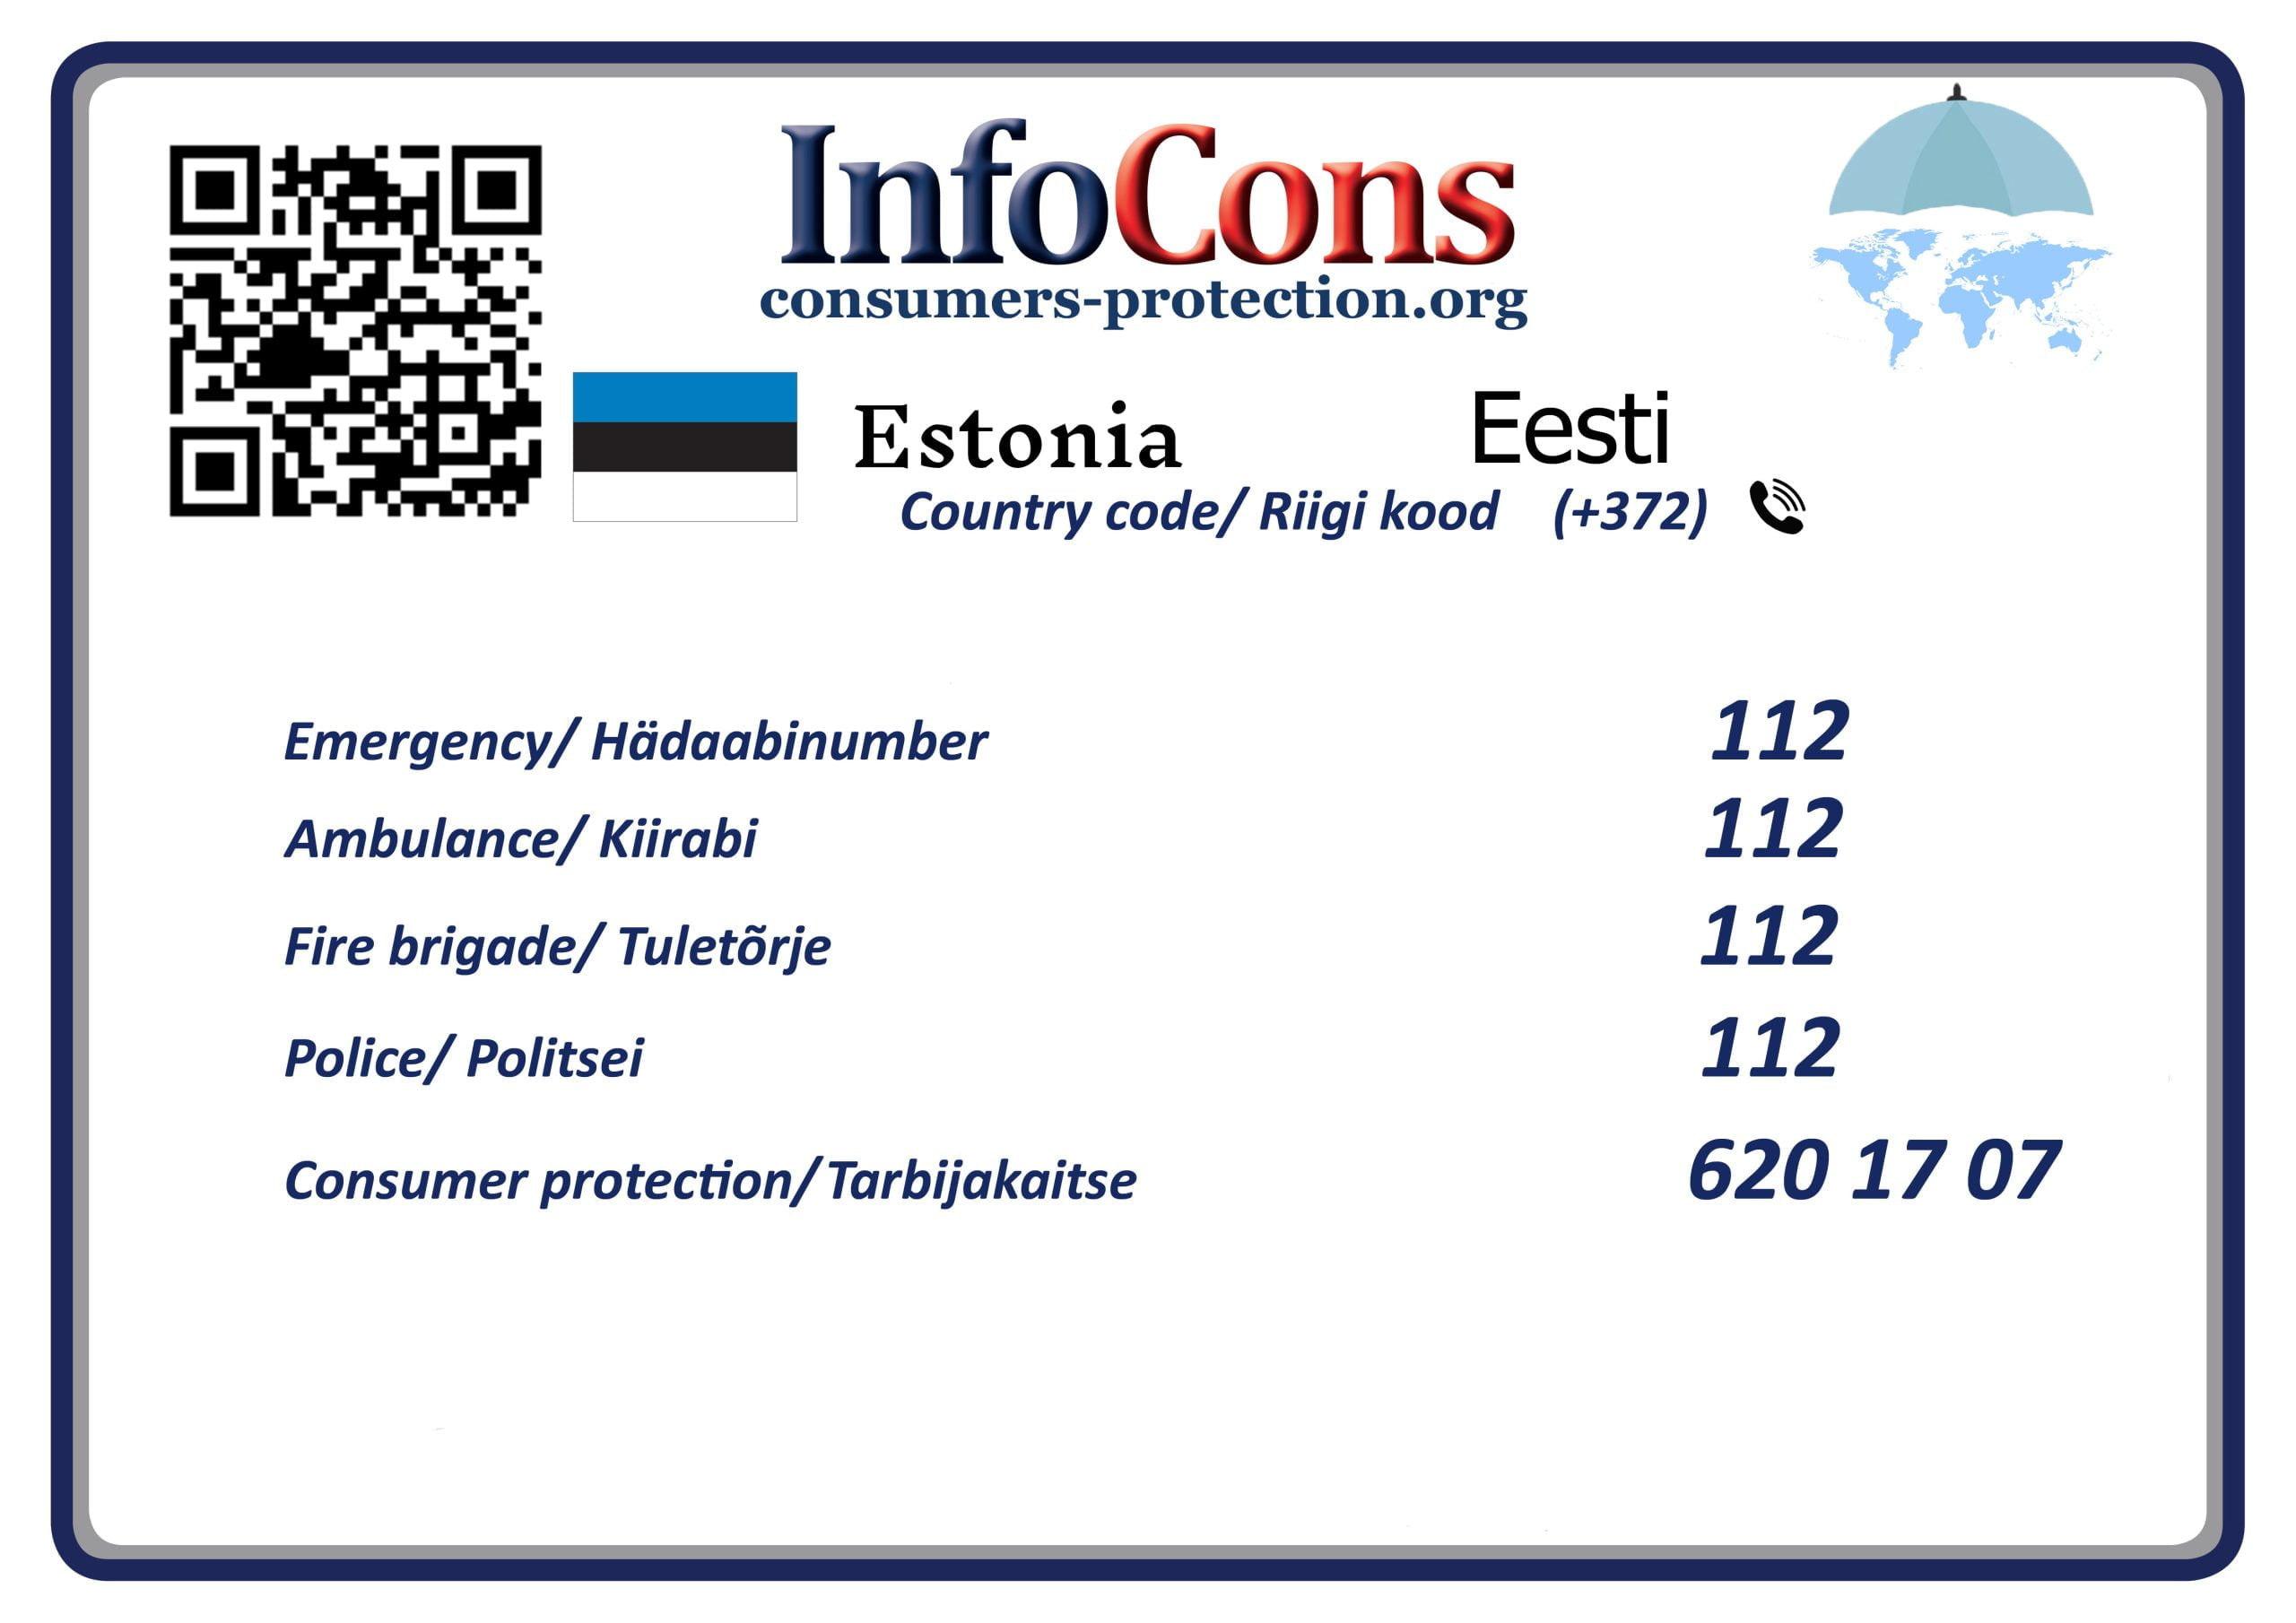 Tarbijakaitse Eesti Consumers Protection Estonia